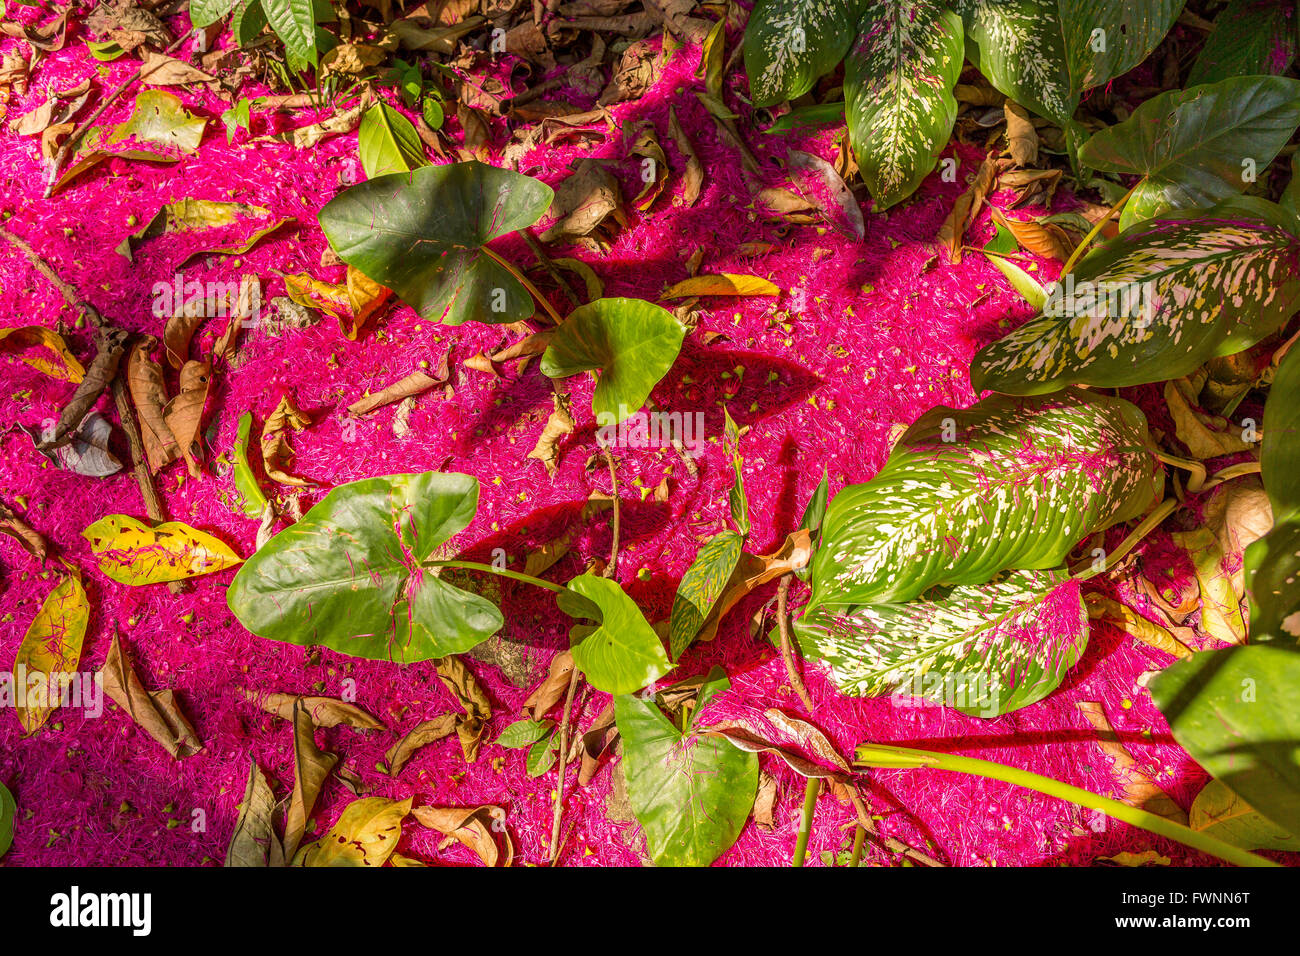 Penisola di OSA, COSTA RICA - foresta pluviale tropicale pavimento, con petali di fiori dall'acqua melo. Syzygium malaccensis Foto Stock